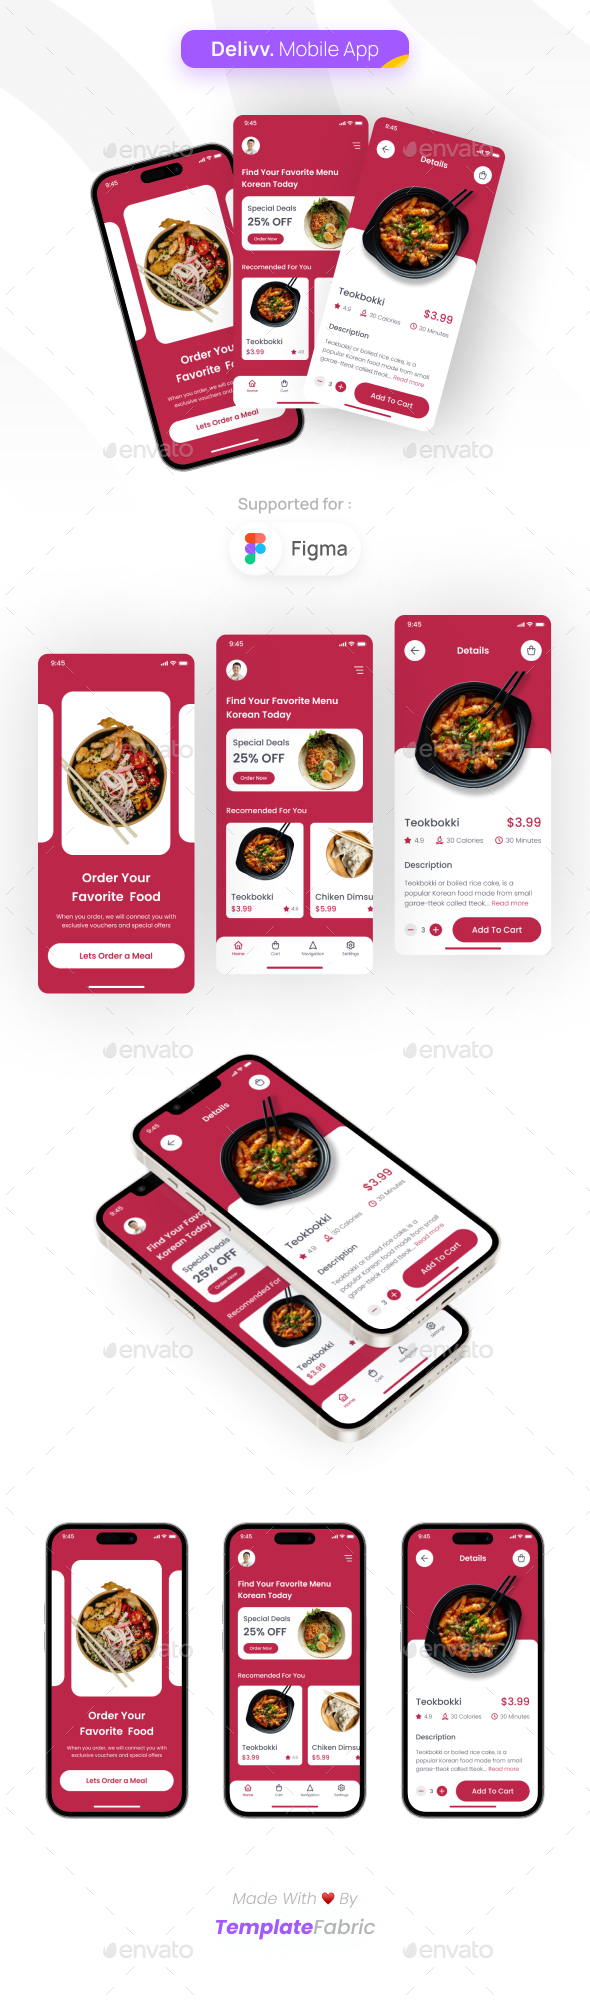 [DOWNLOAD]Delivv - Food Delivery Mobile App UI Kit